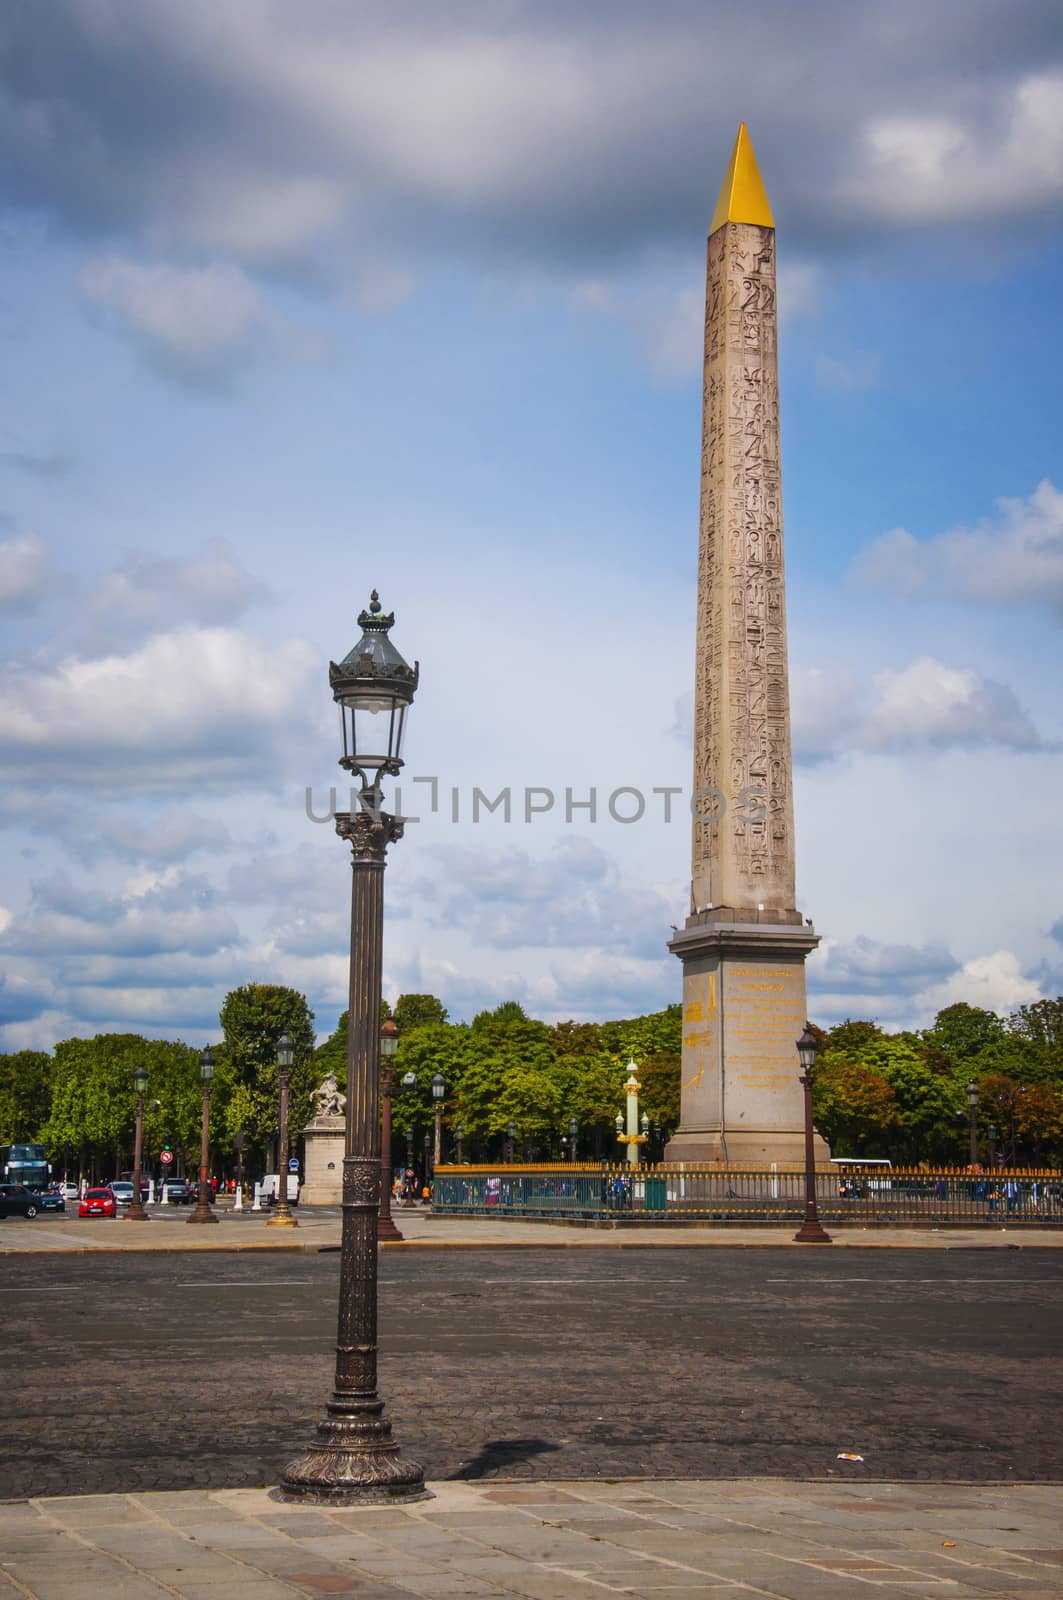 The Luxor obelisk in the Place de la Concorde in Paris.